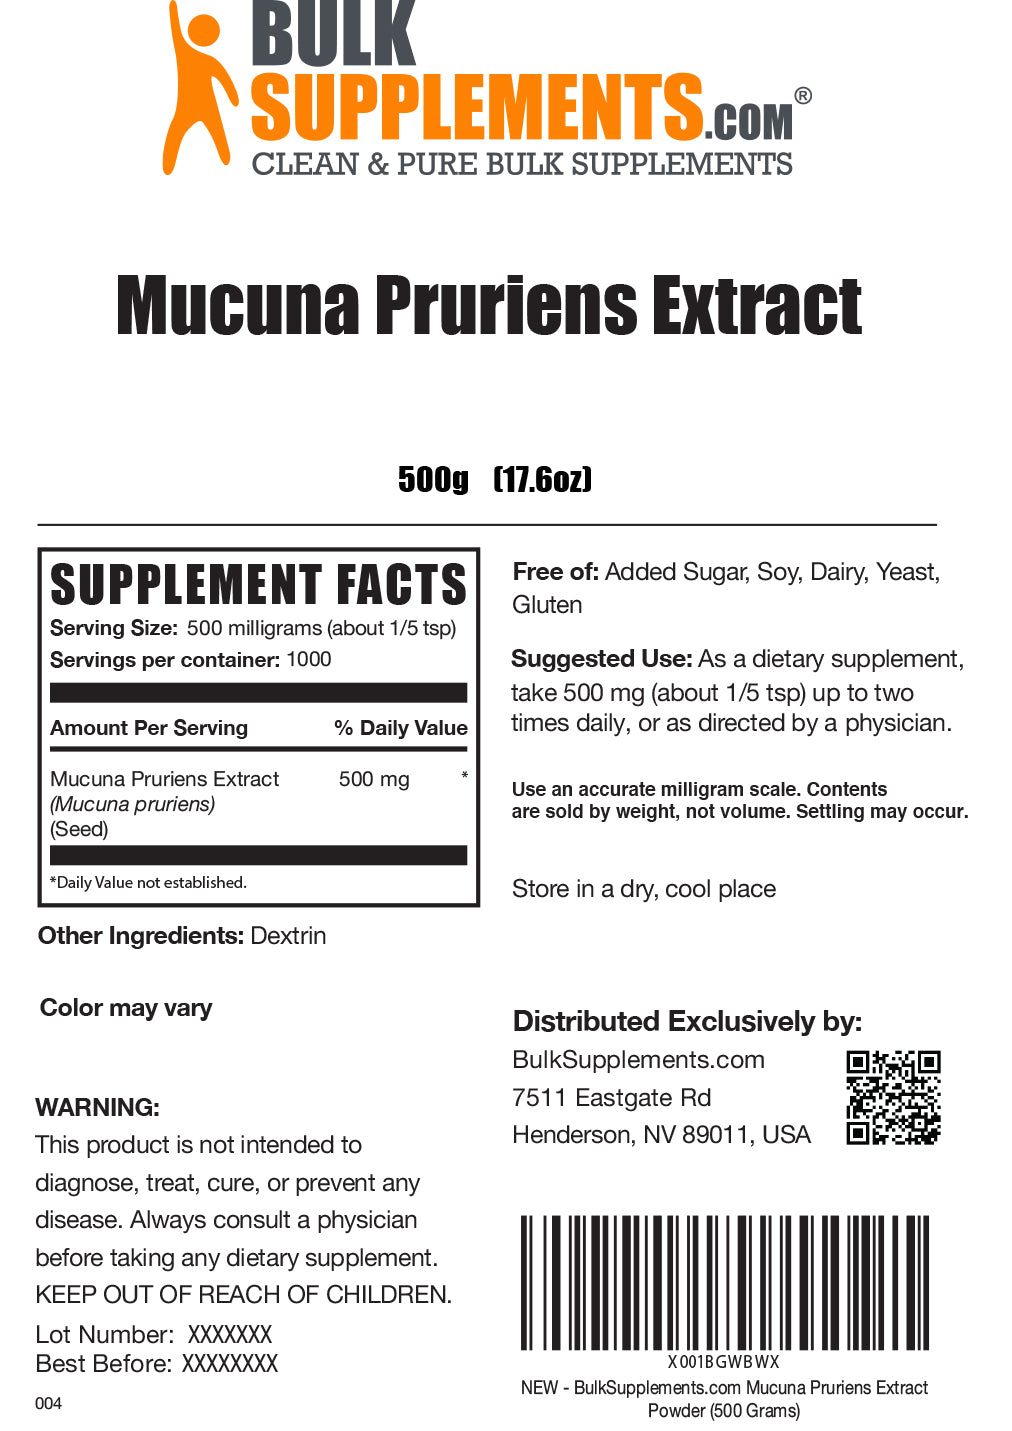 Mucuna Pruriens Extract powder label 500g